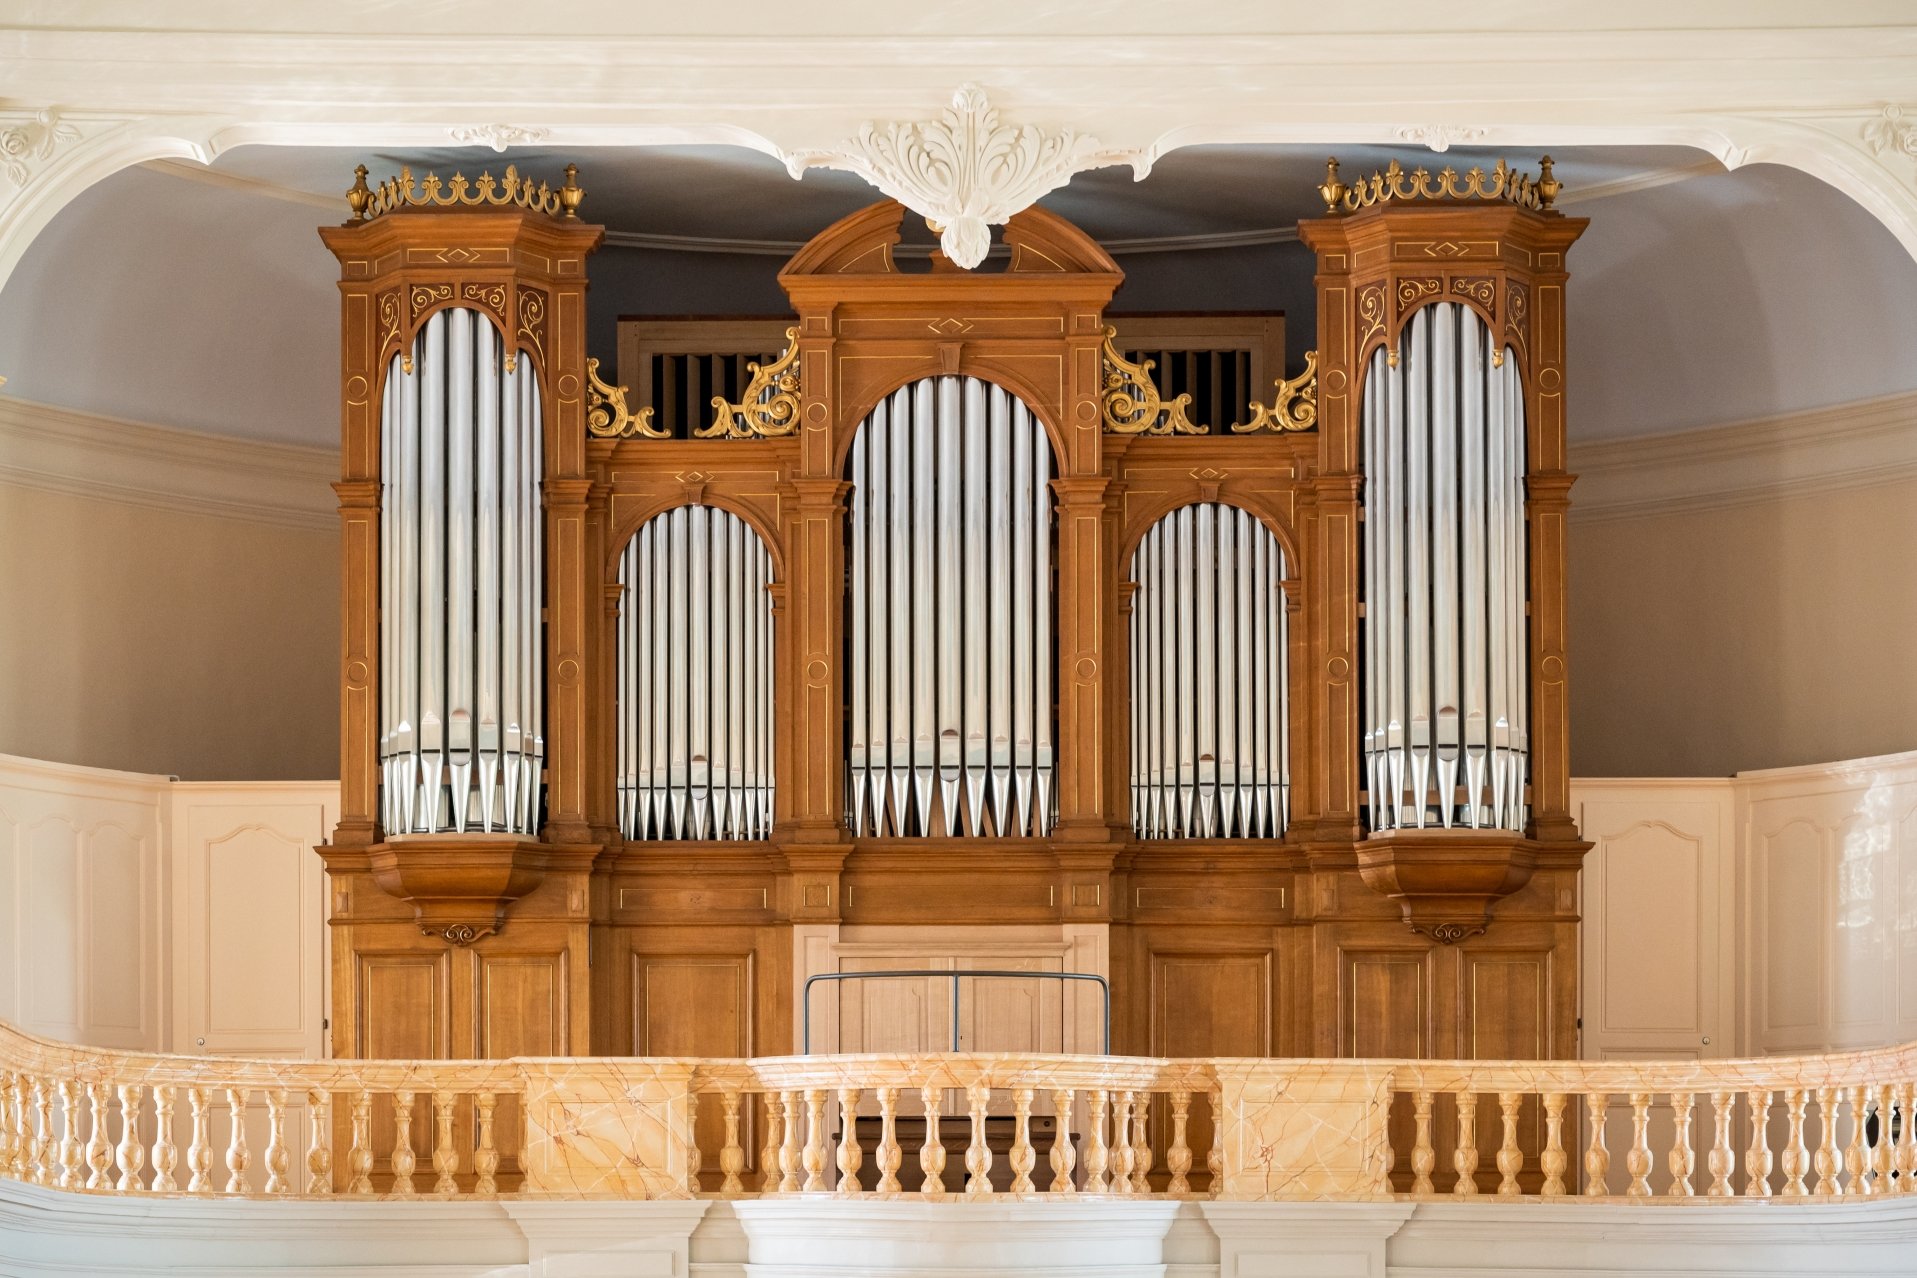 Les nouvelles orgues Ahrend